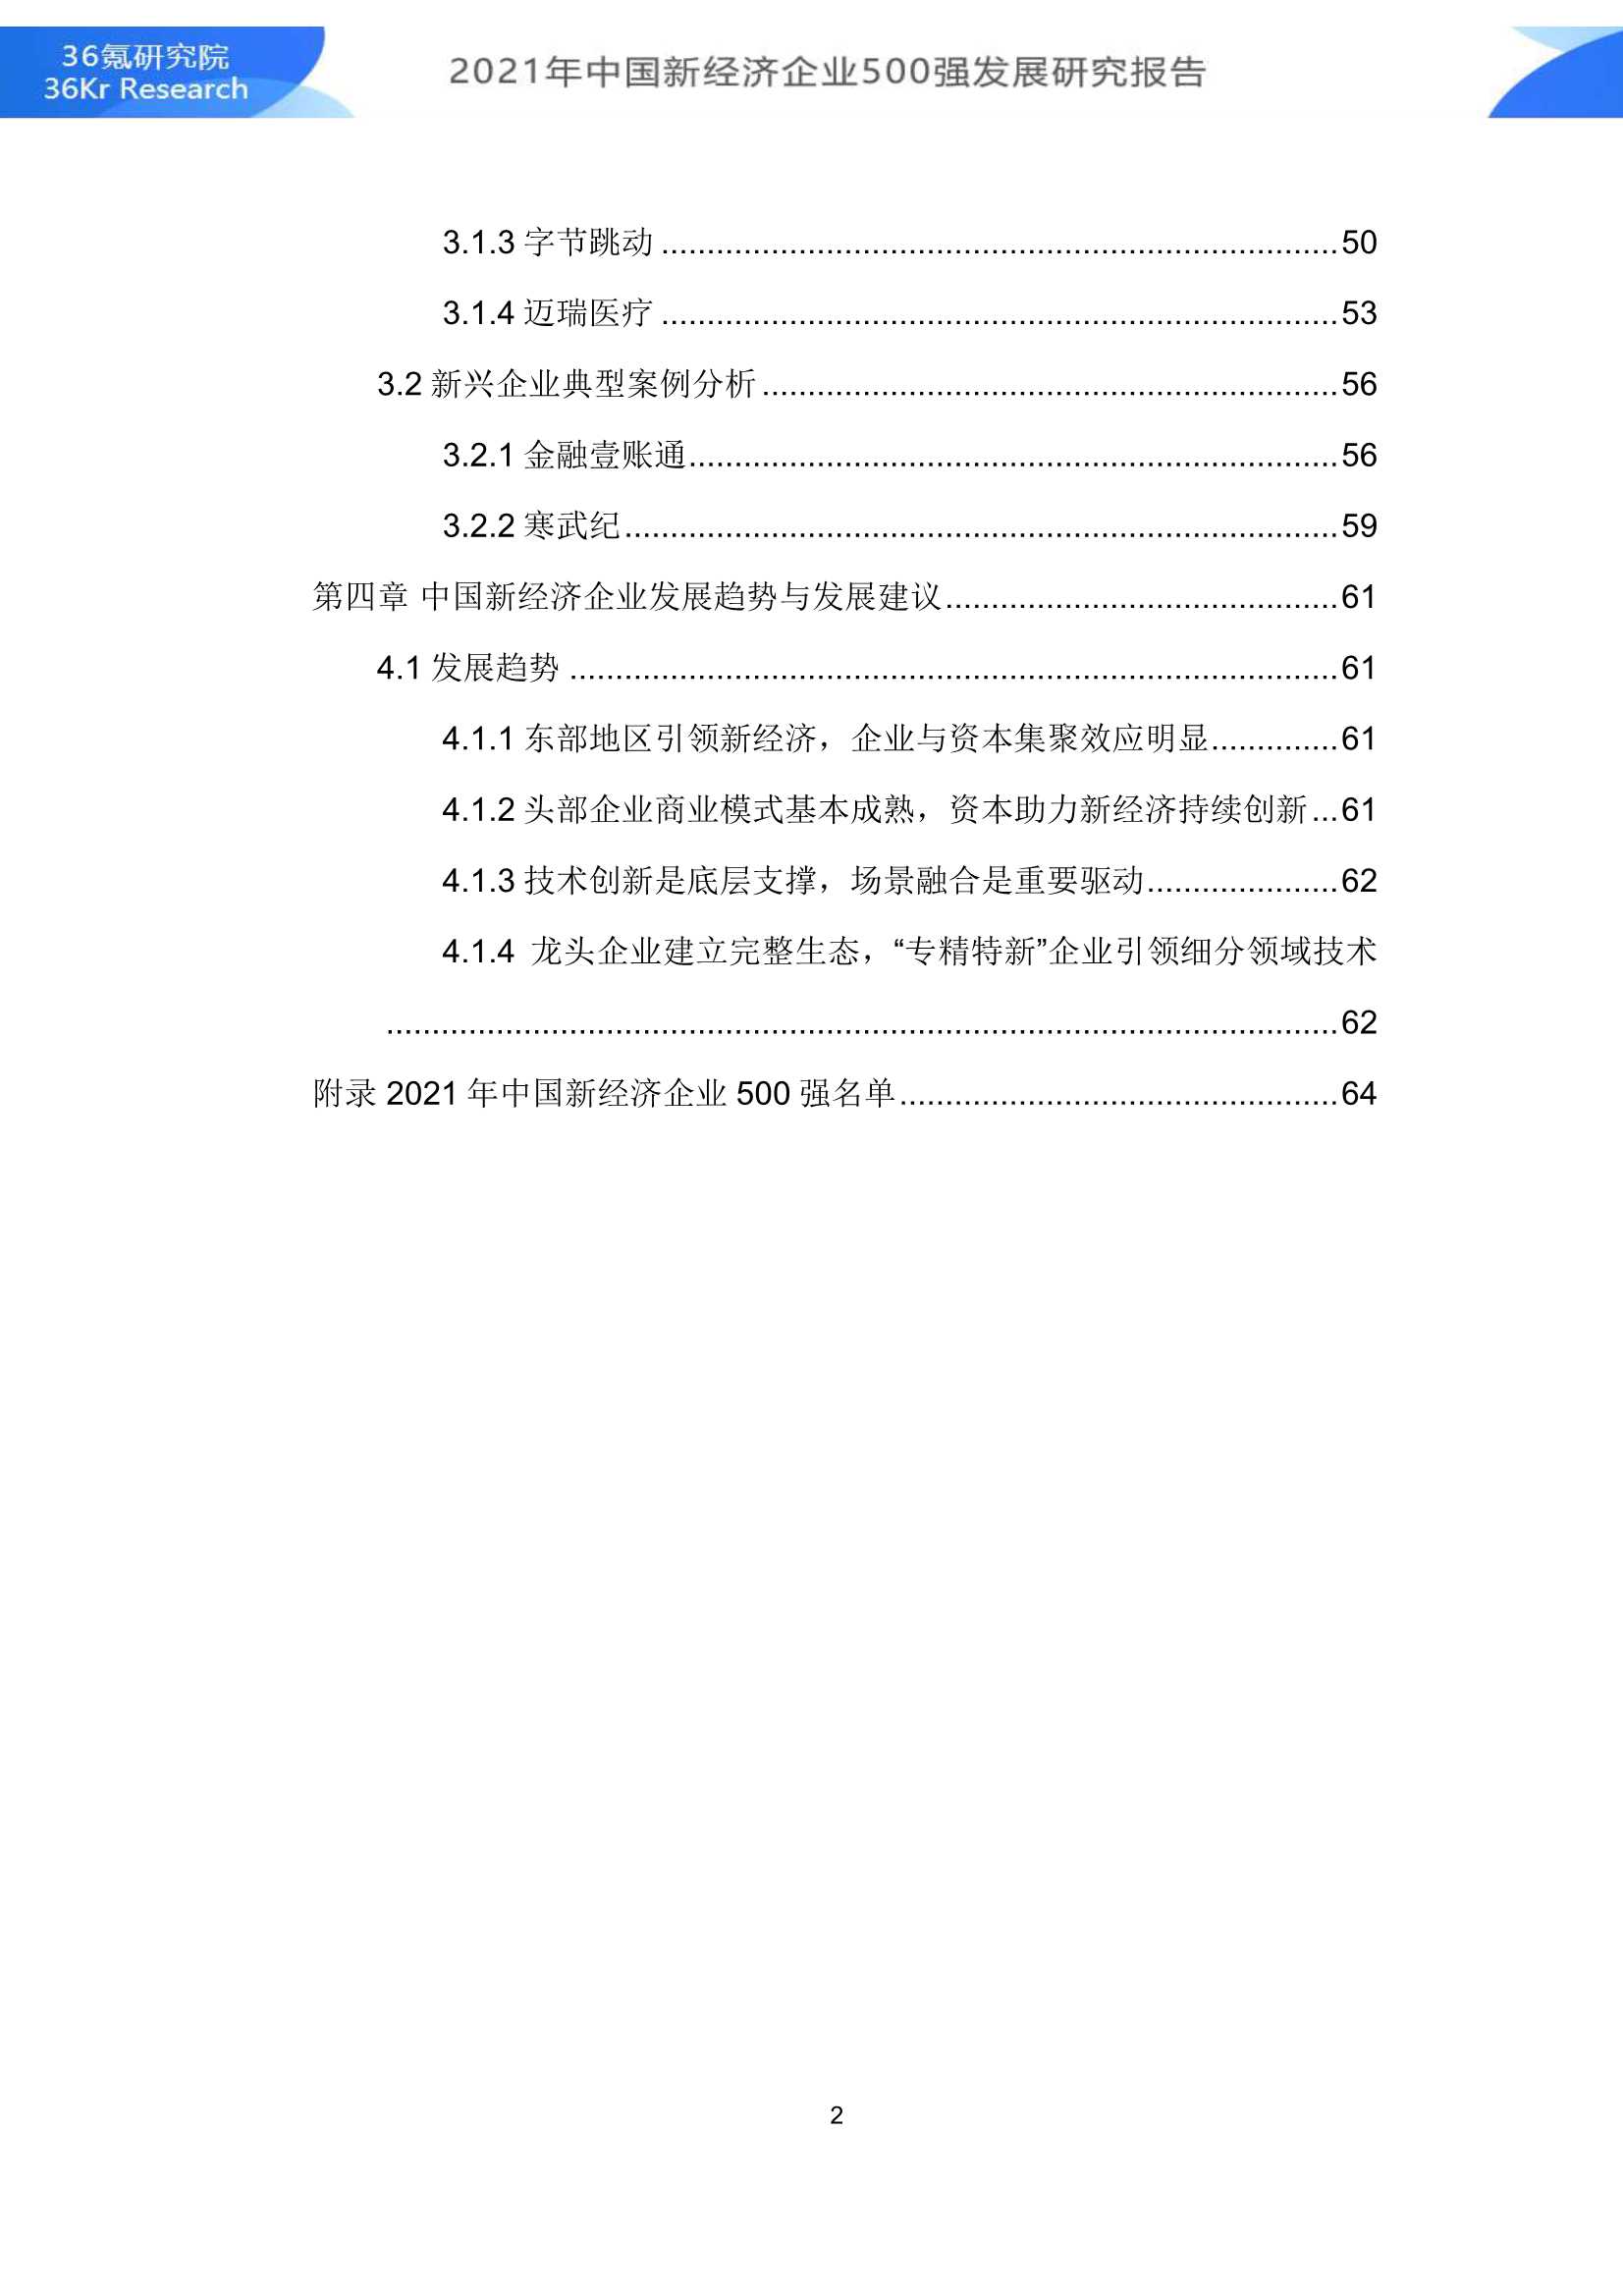 36Kr-2021年中国新经济500强发展研究报告-2021.12-79页